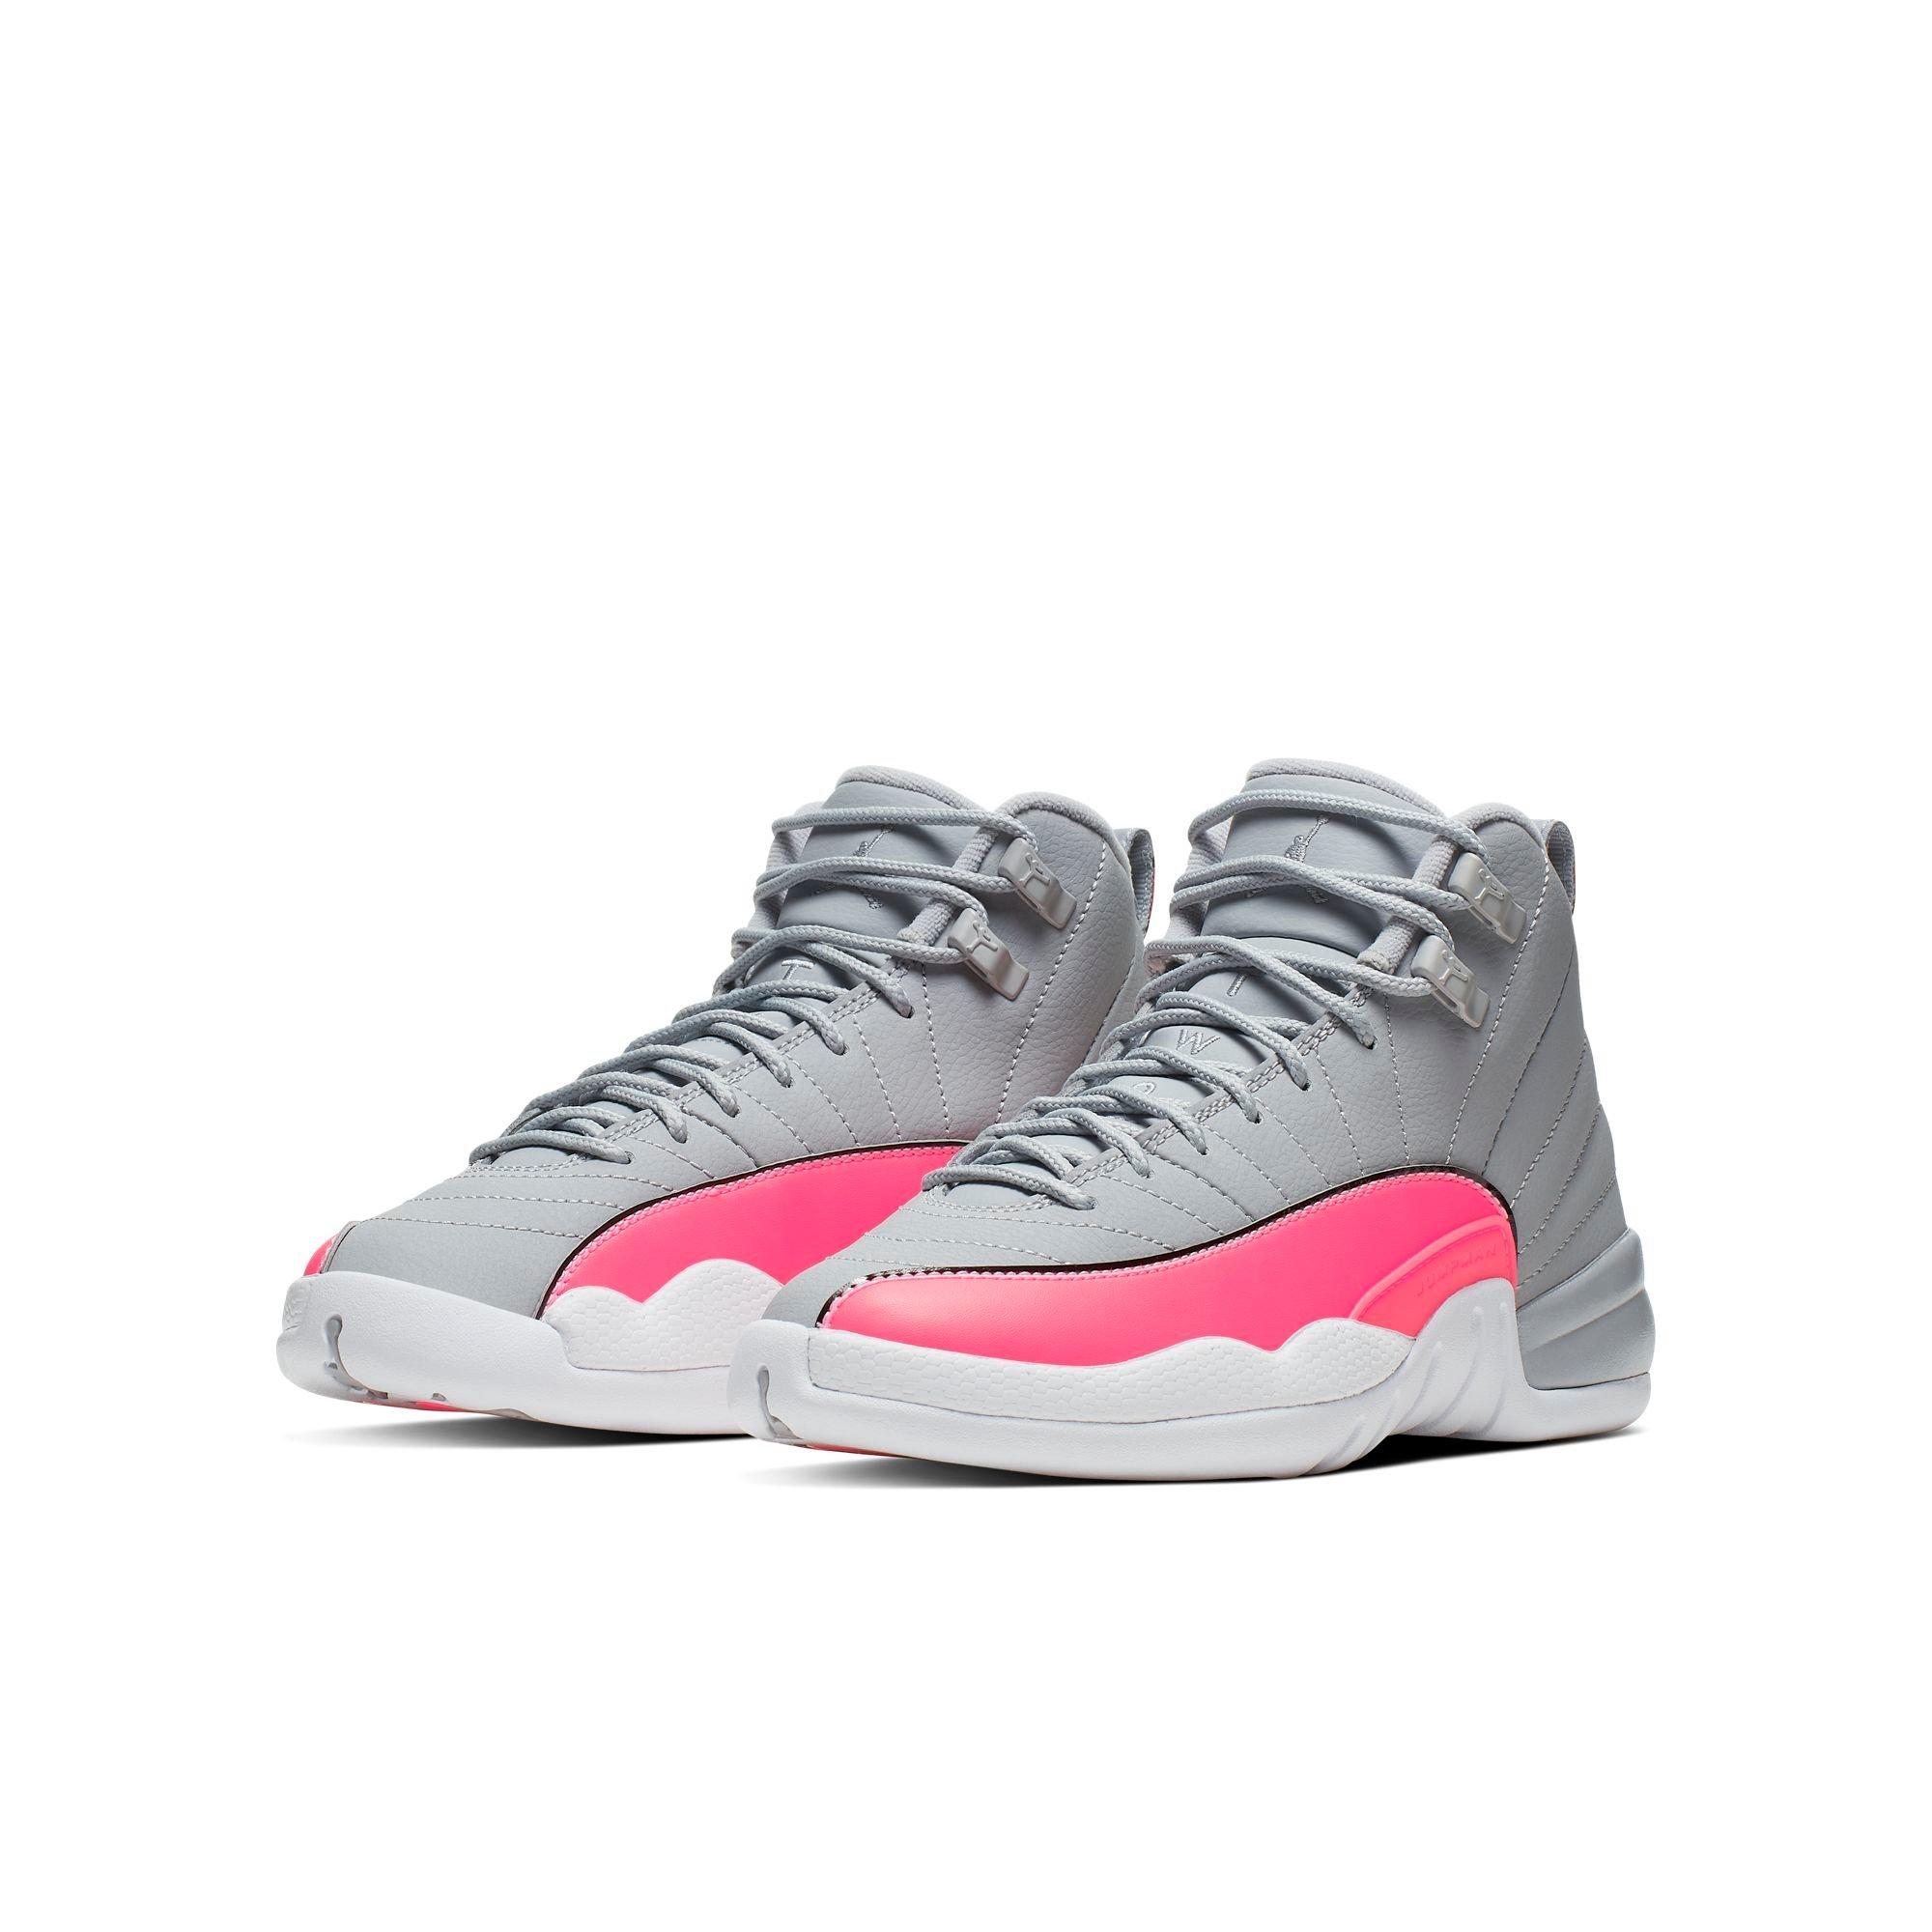 jordan retro 12 grey and pink